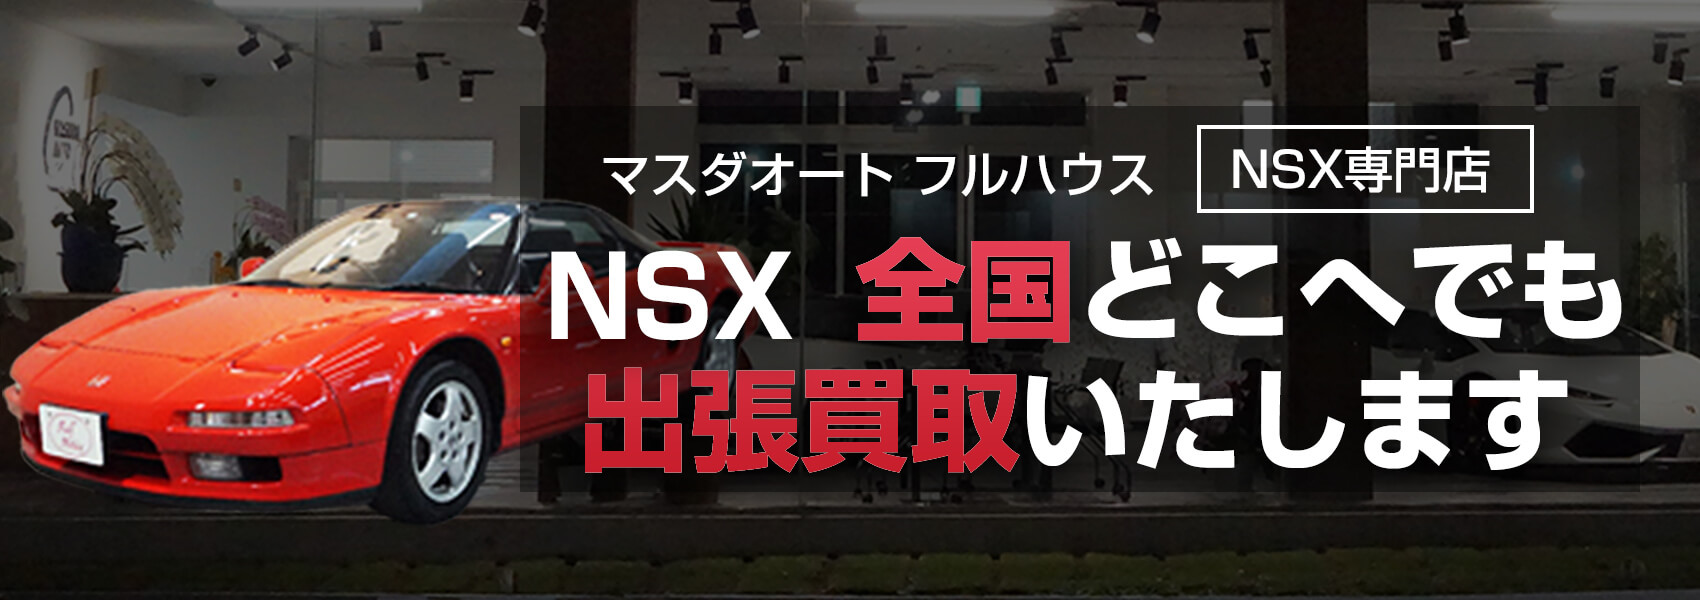 マスダオート フルハウス（NSX専門店）
NSX 全国どこへでも
出張買取いたします